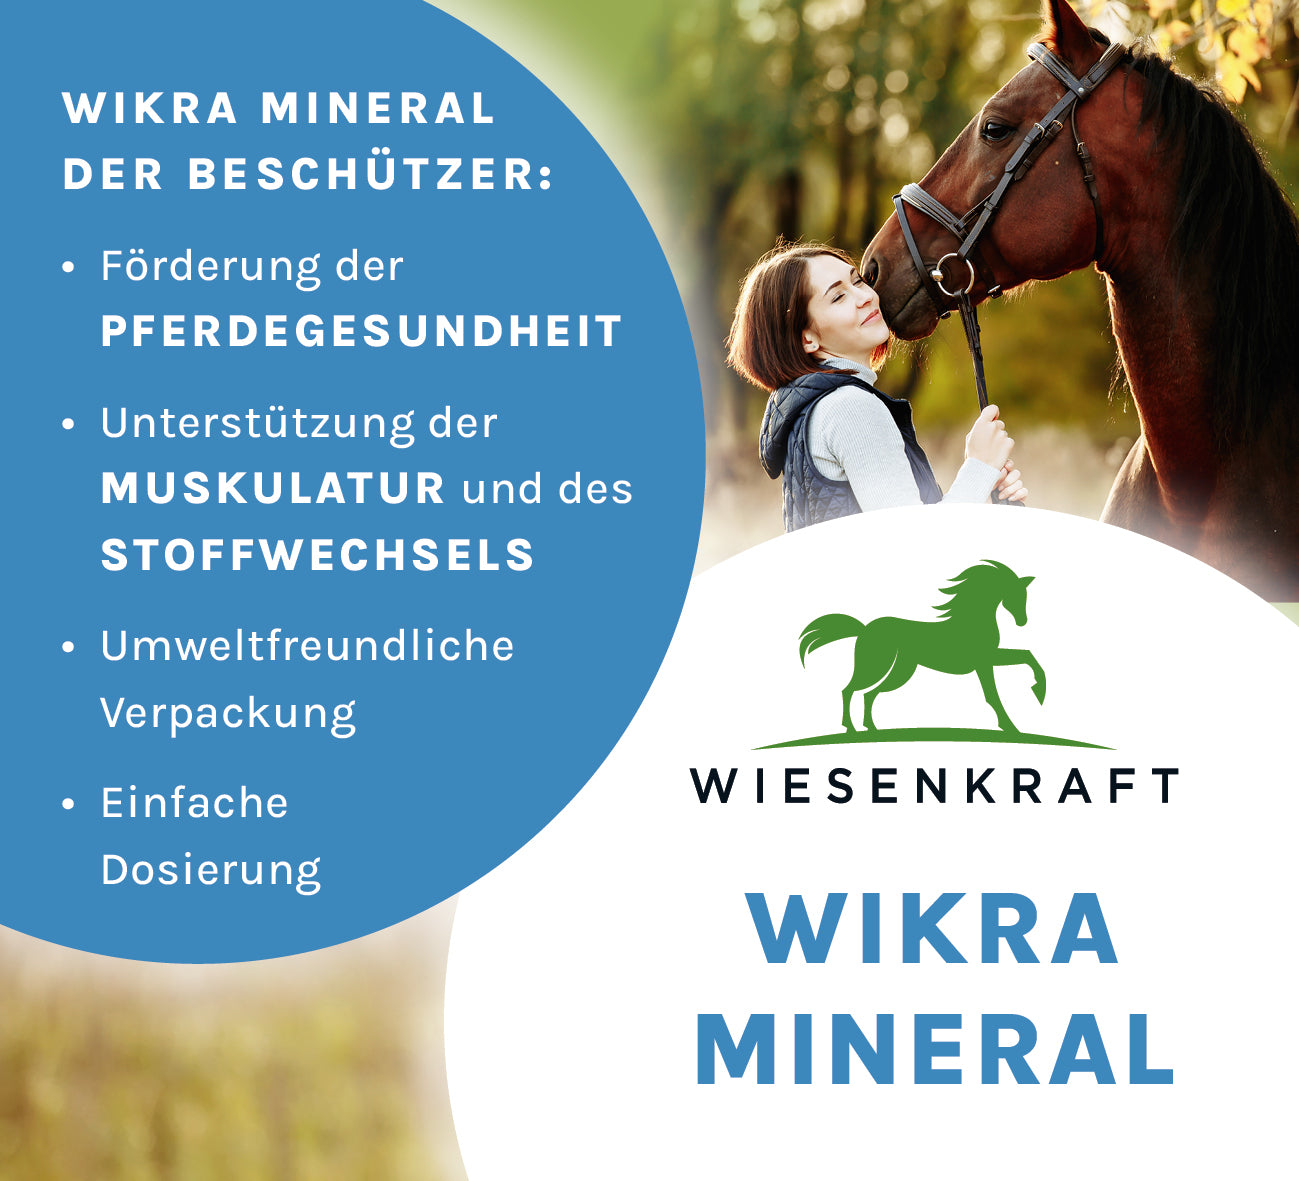 Wikra Mineral